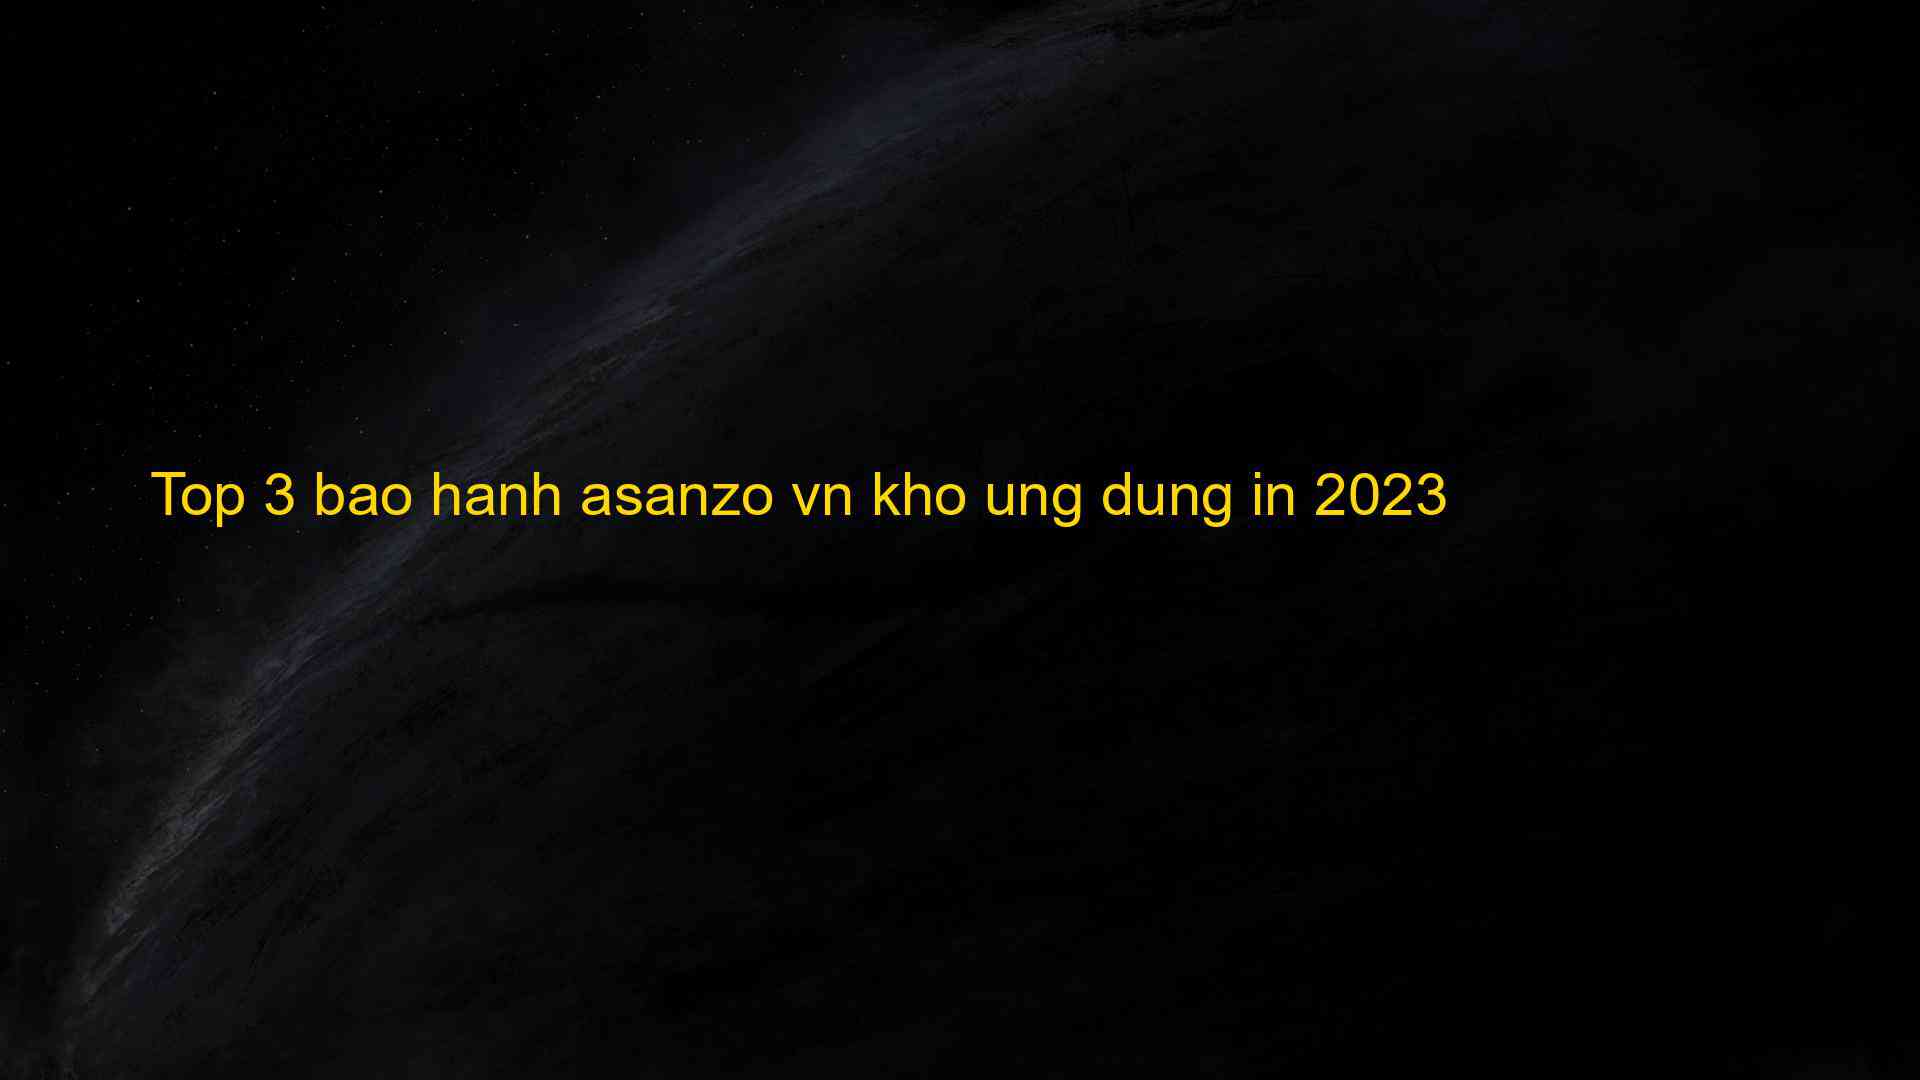 Top 3 bao hanh asanzo vn kho ung dung in 2023 - Chia Sẻ Kiến Thức Điện Máy Việt Nam